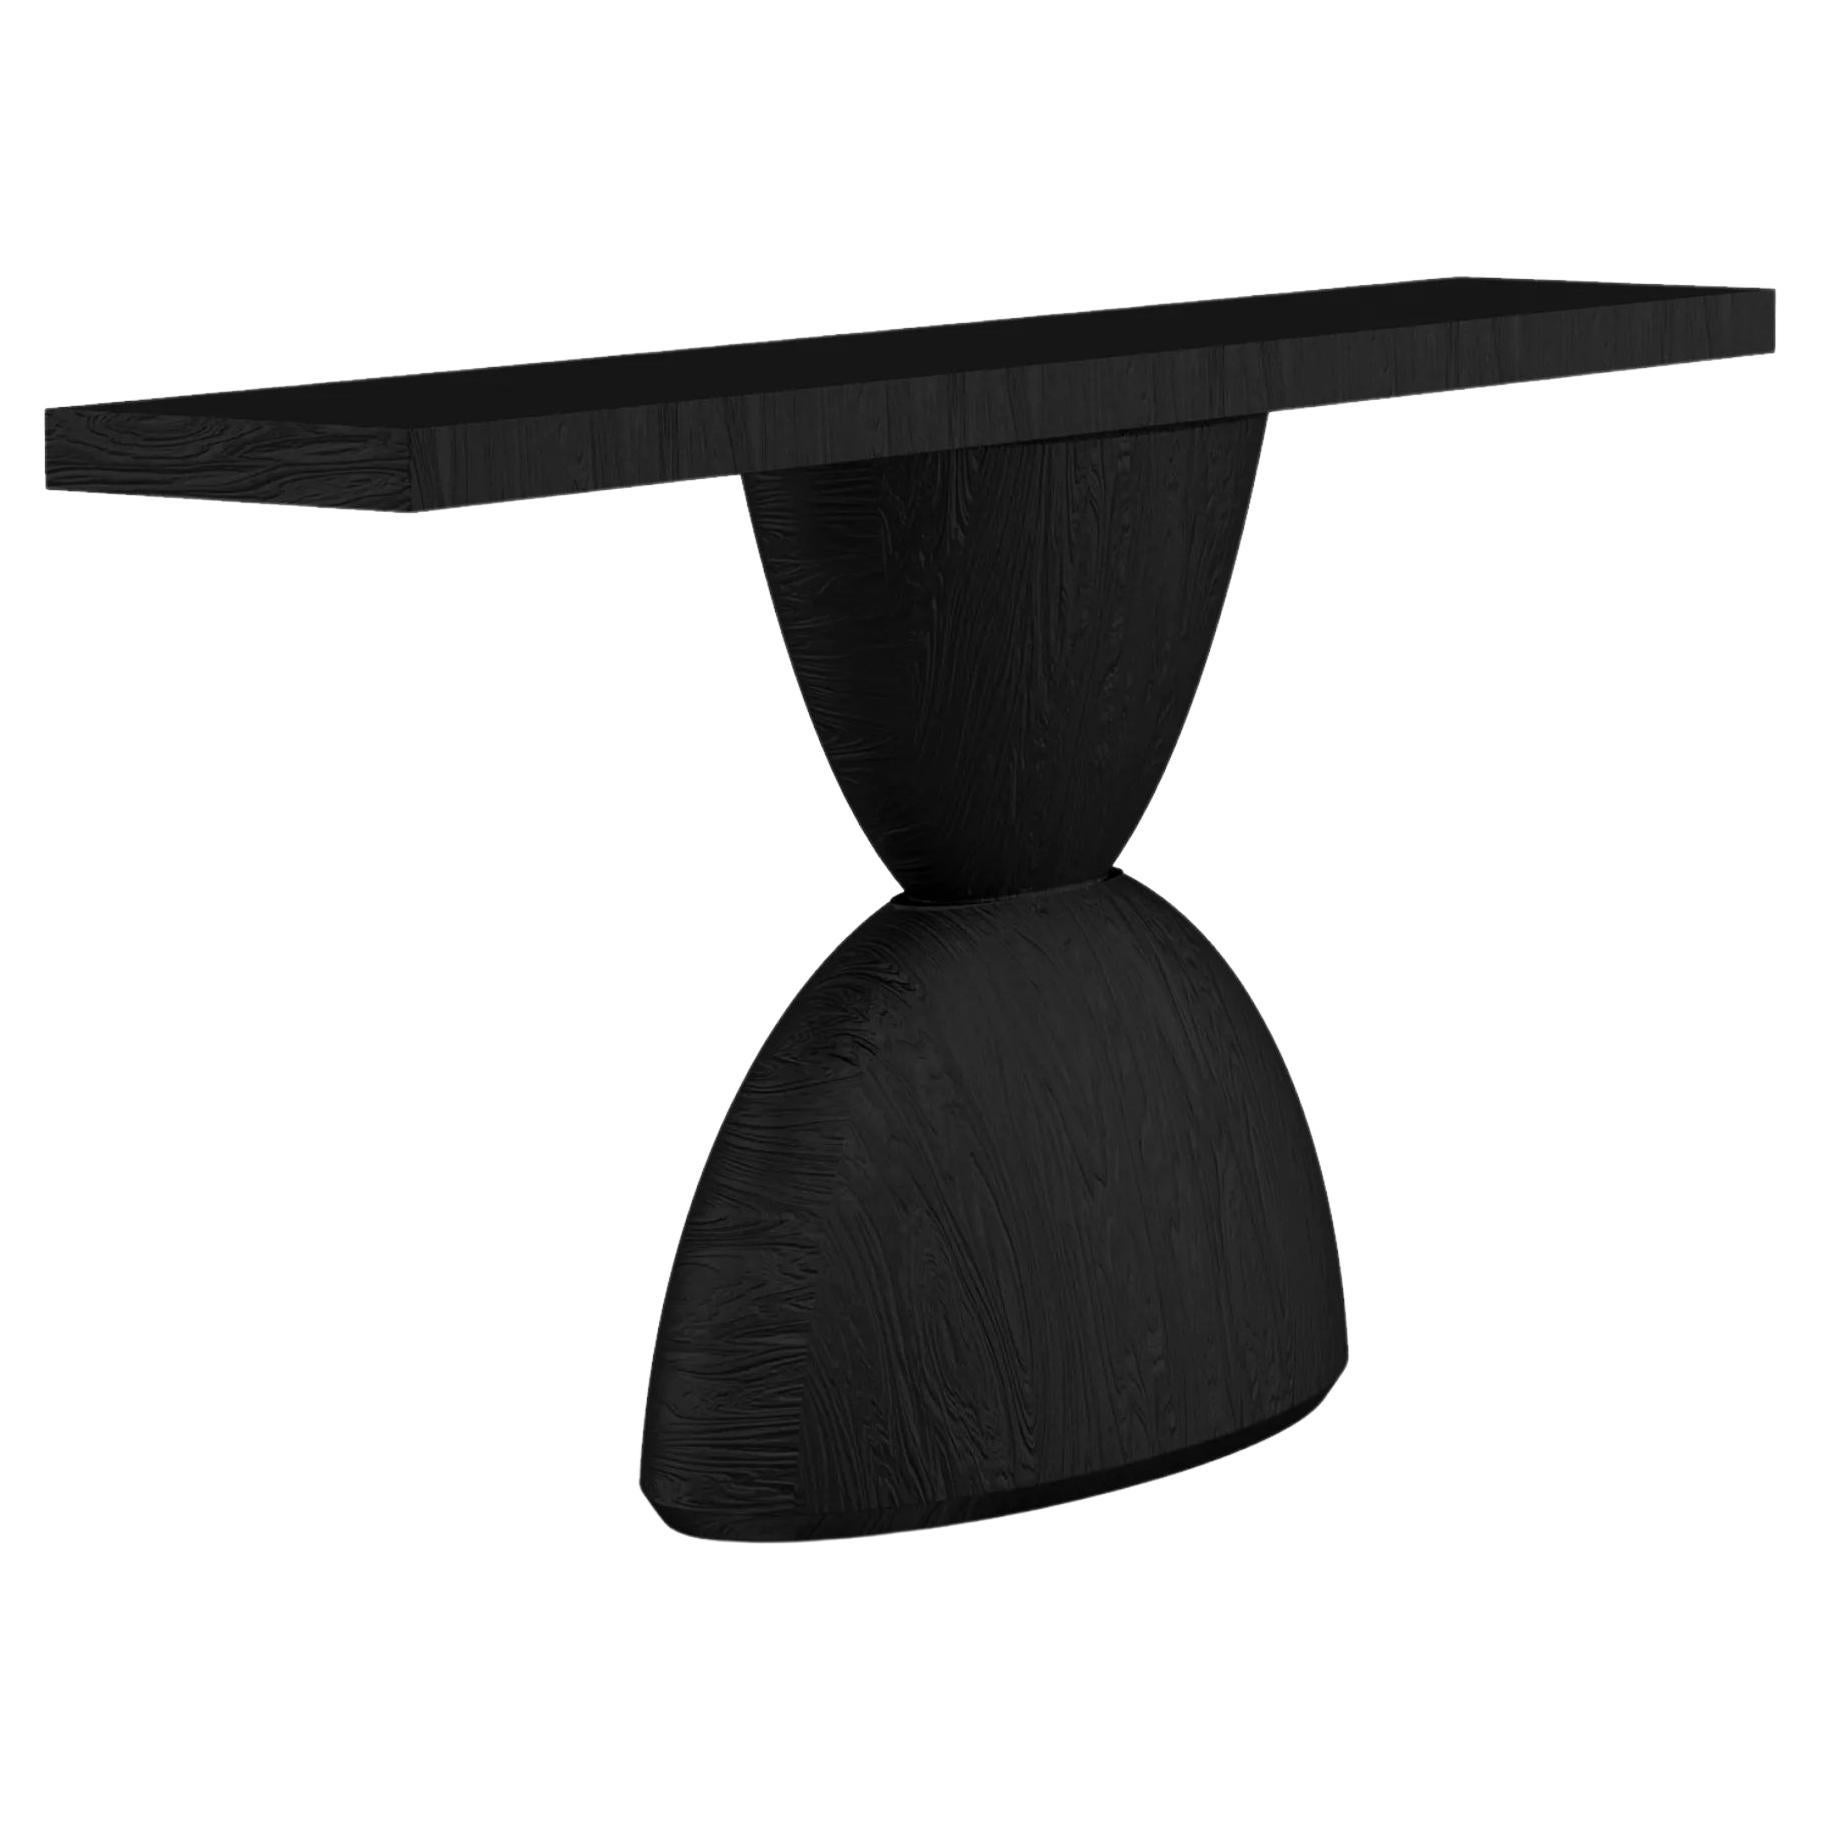 Table console contemporaine Tota en bois brûlé de CarmWorks, personnalisable